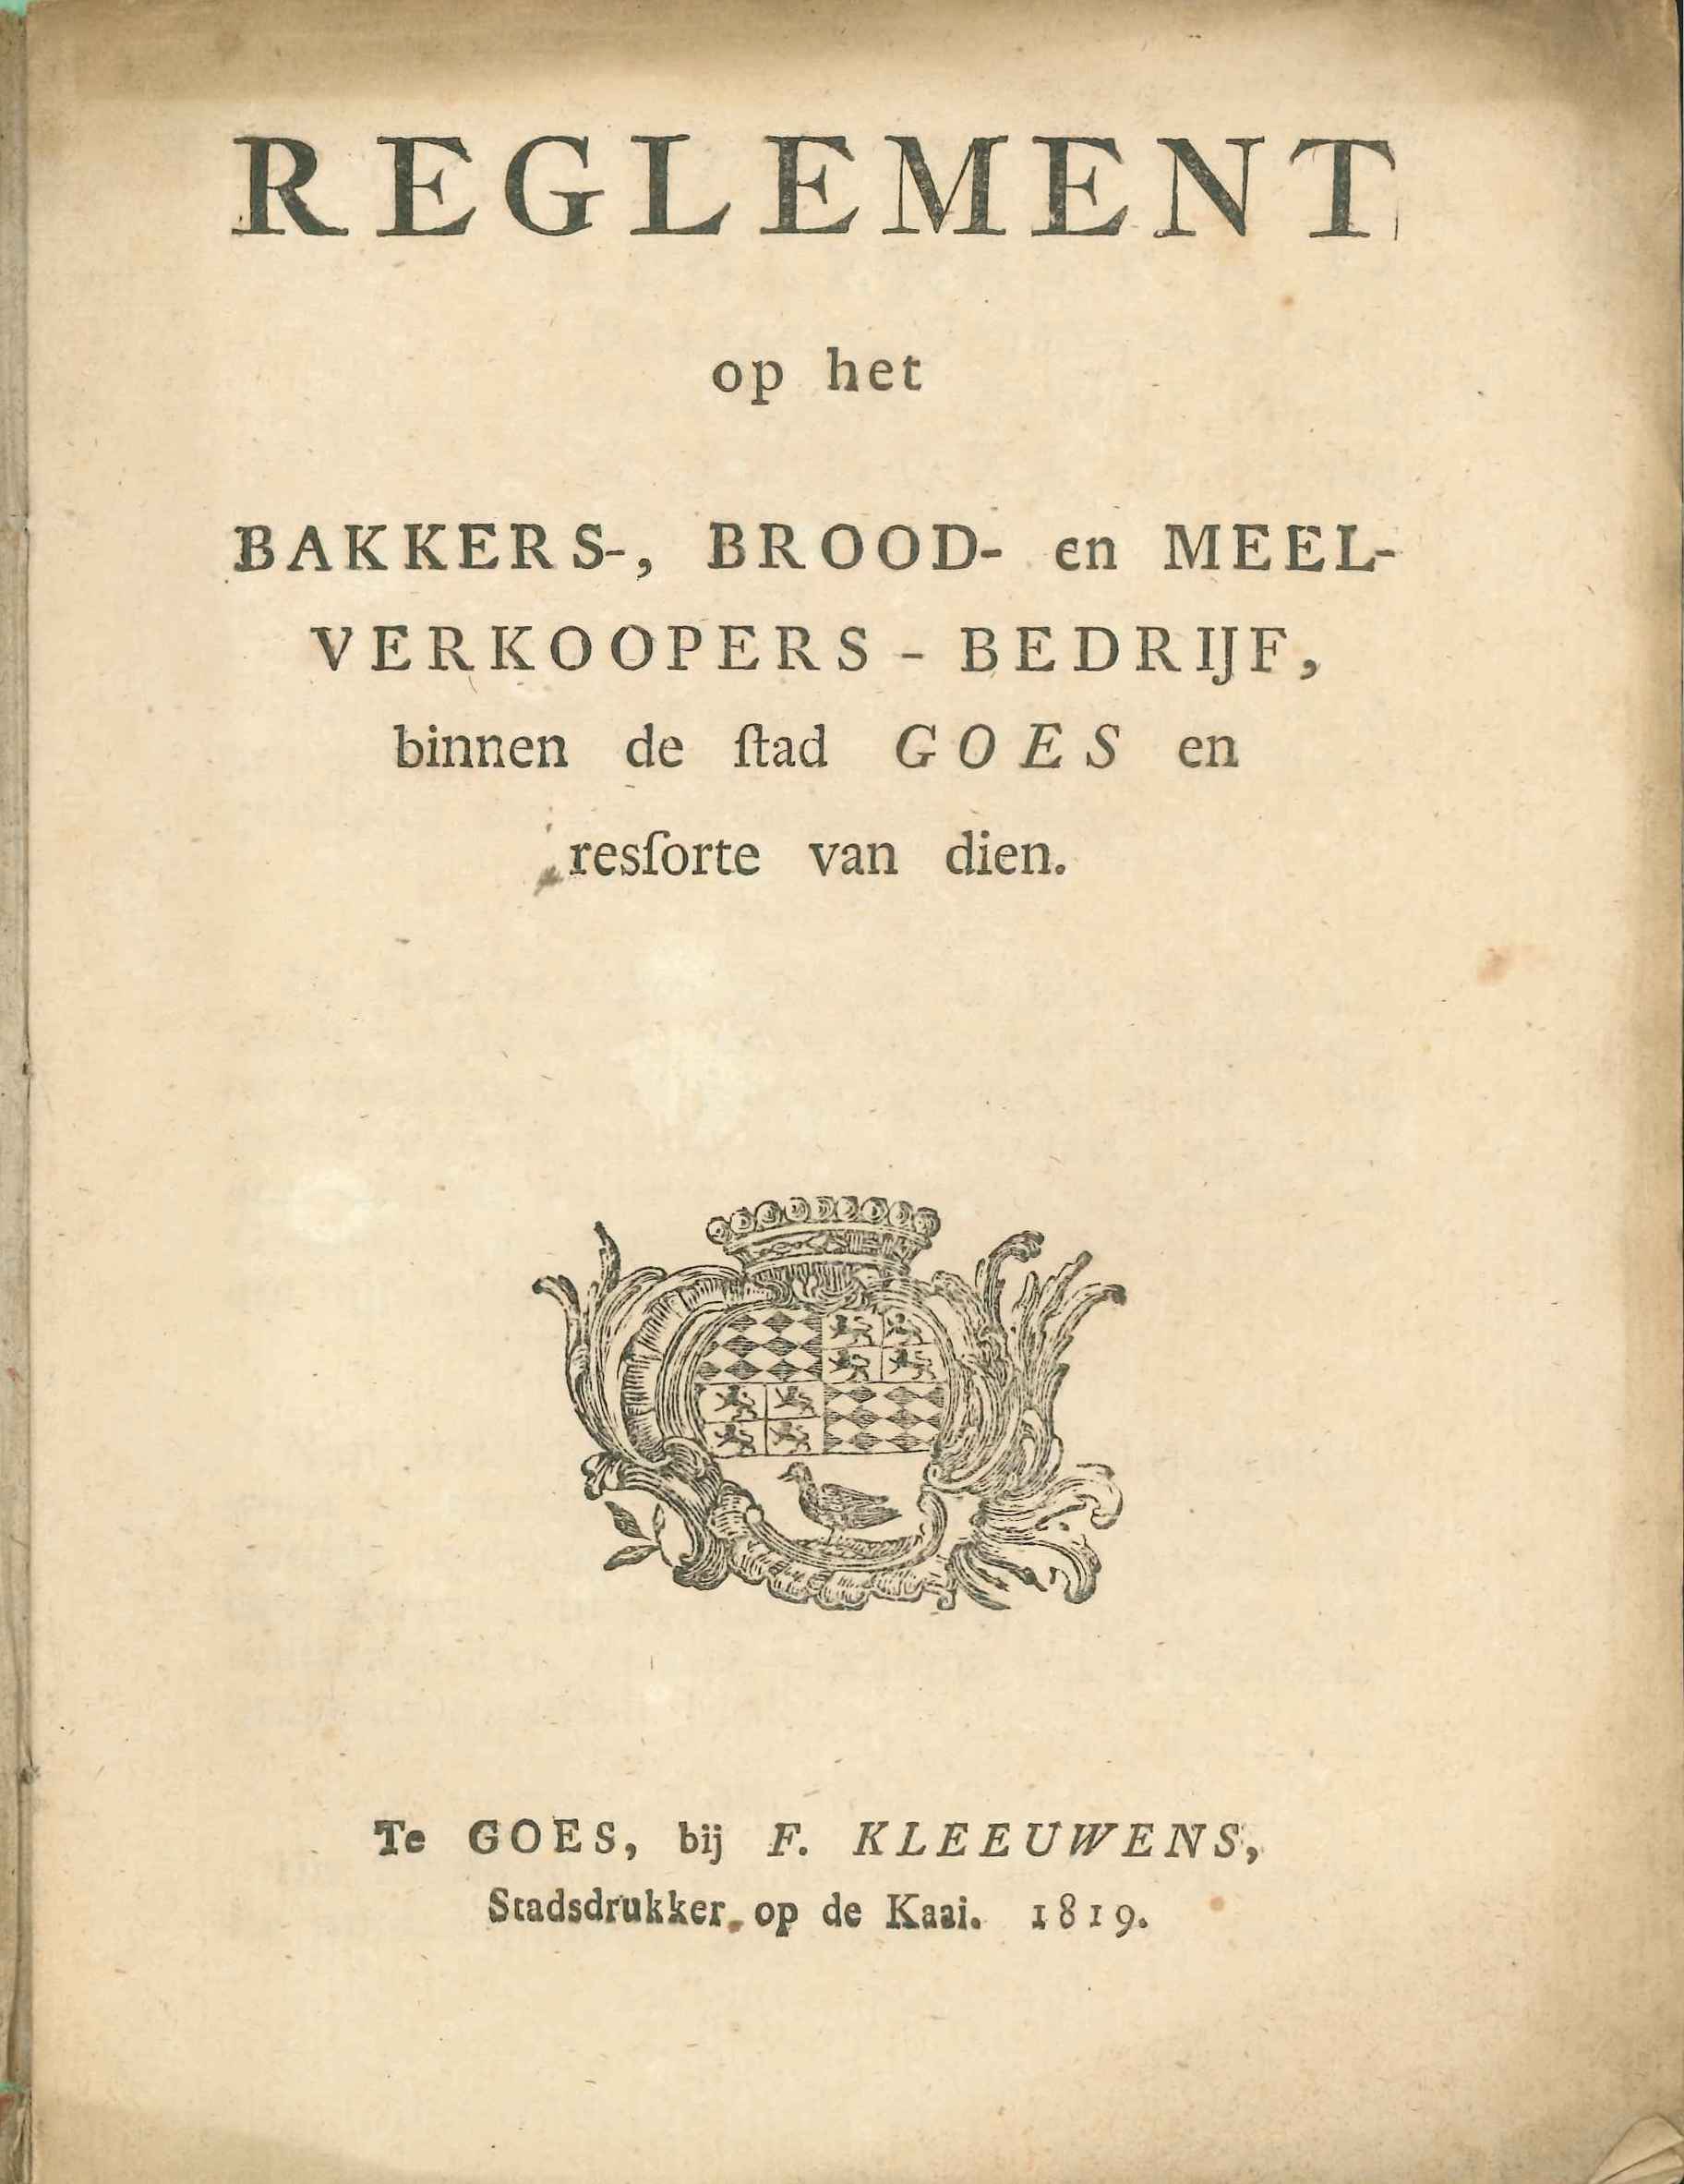 Reglement op het bakkersambacht, 1819.